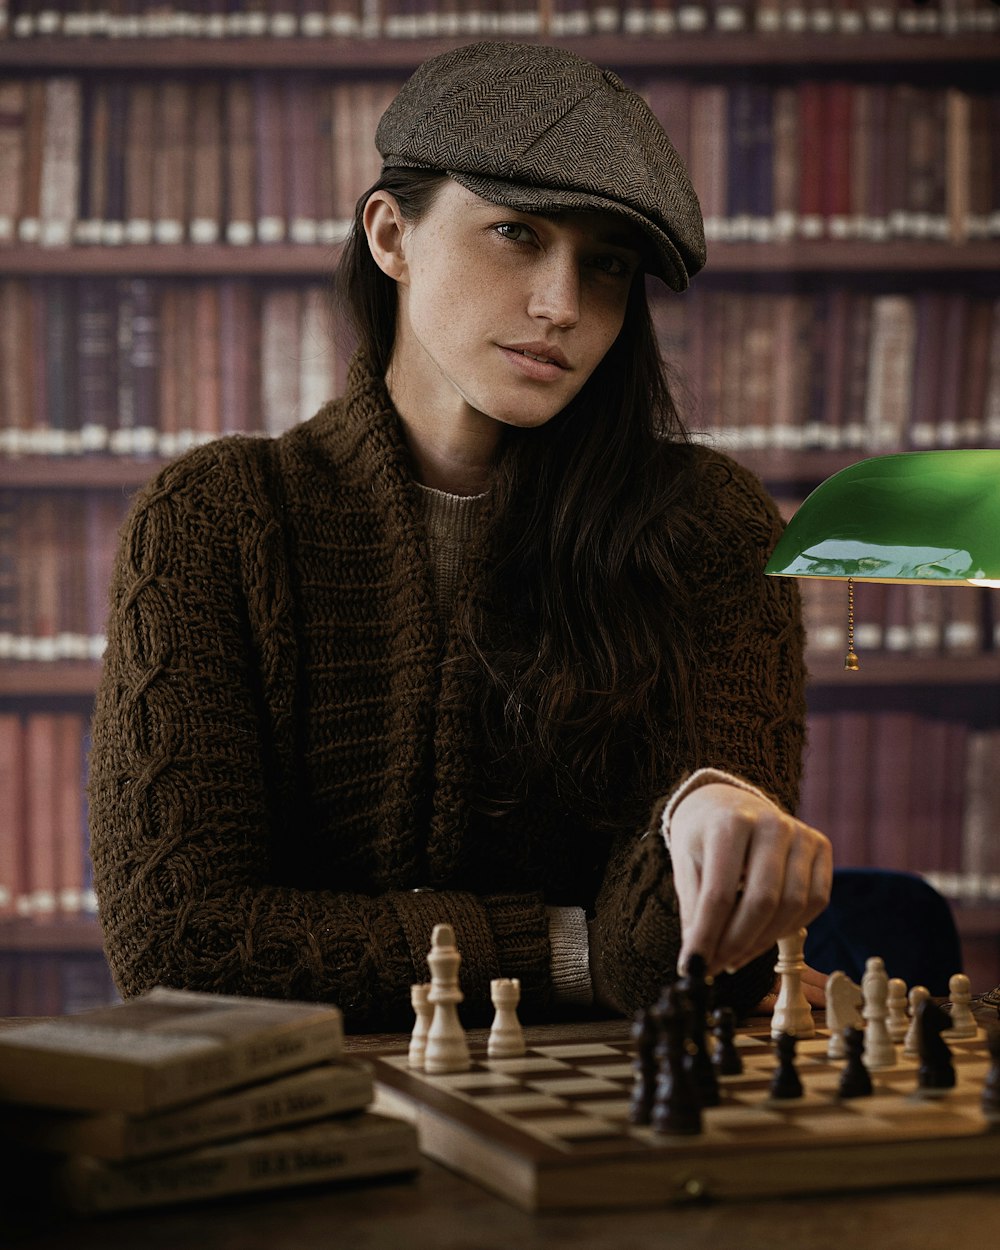 Una mujer sentada en una mesa jugando una partida de ajedrez